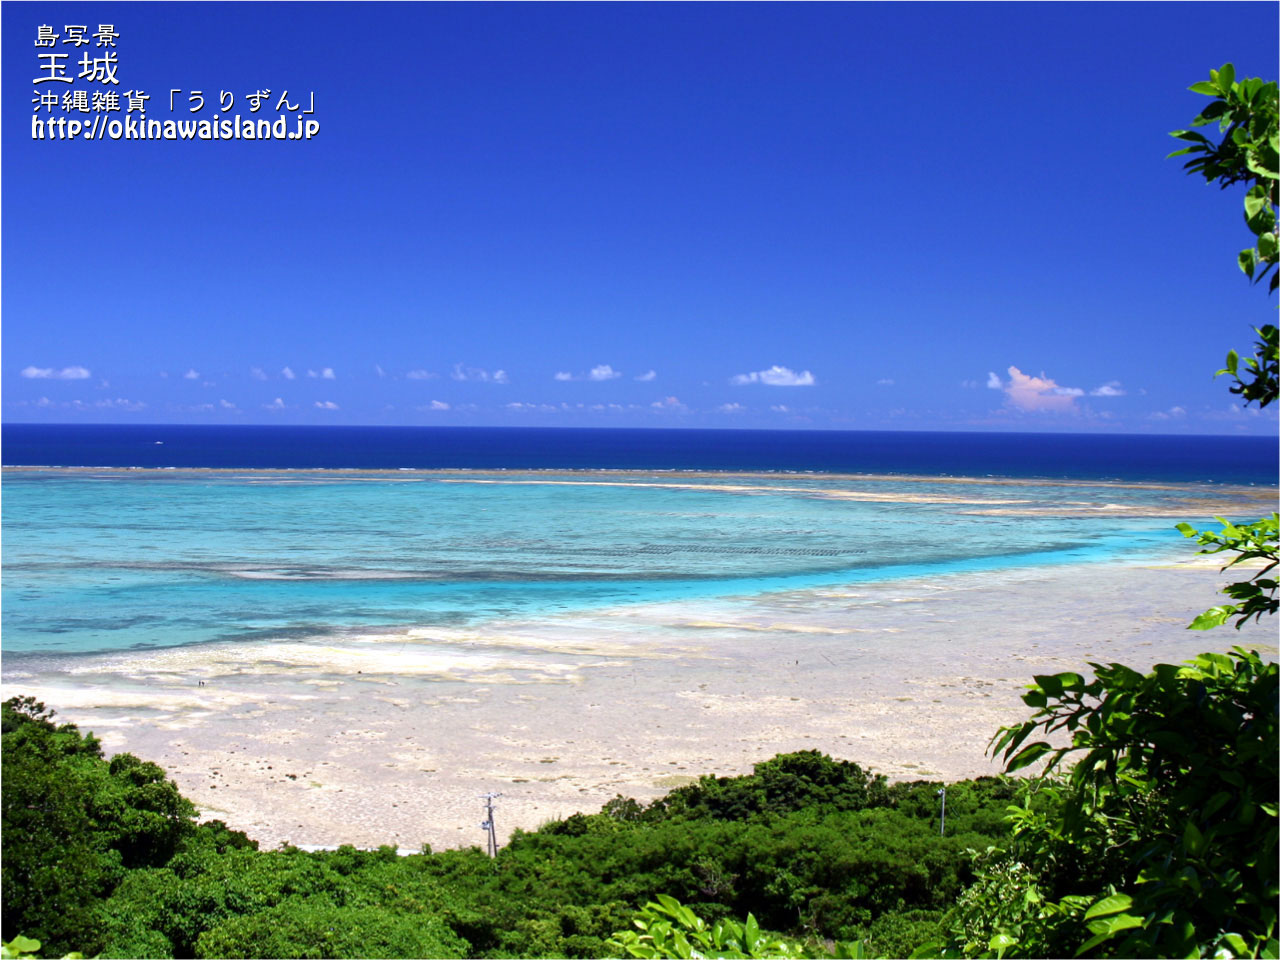 沖縄の風景 壁紙 デスクトップカレンダー 無料ダウンロード 玉城の海 きれいな海 壁紙にしたくなる 画像 Naver まとめ